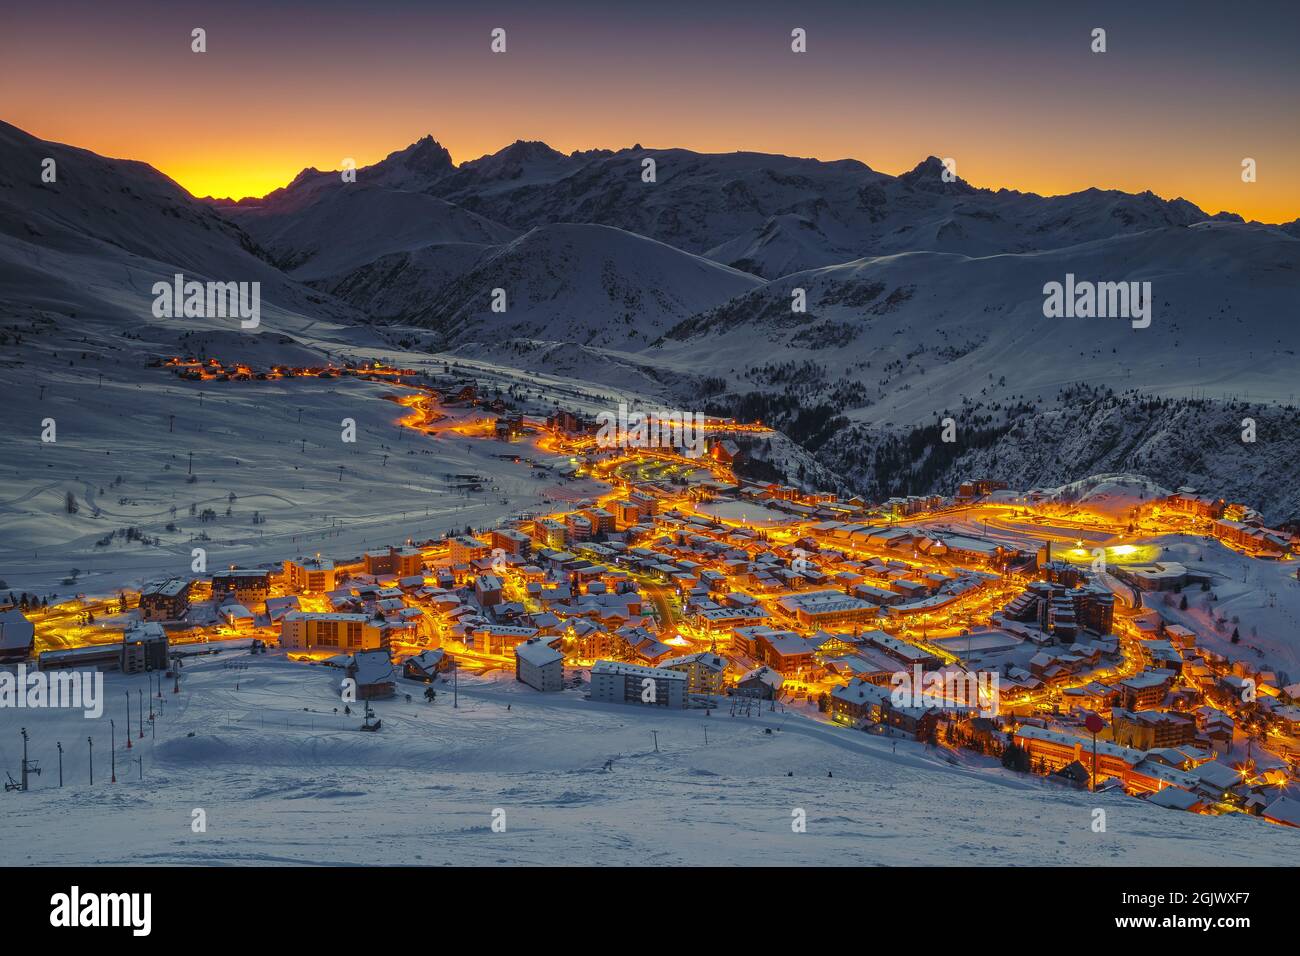 Berühmtes Winterskigebiet und Stadtbild bei Sonnenaufgang. Beliebtes Ziel und Skipisten bei Sonnenaufgang, Alpe d Huez, Rhone Alps, Frankreich, Europa Stockfoto